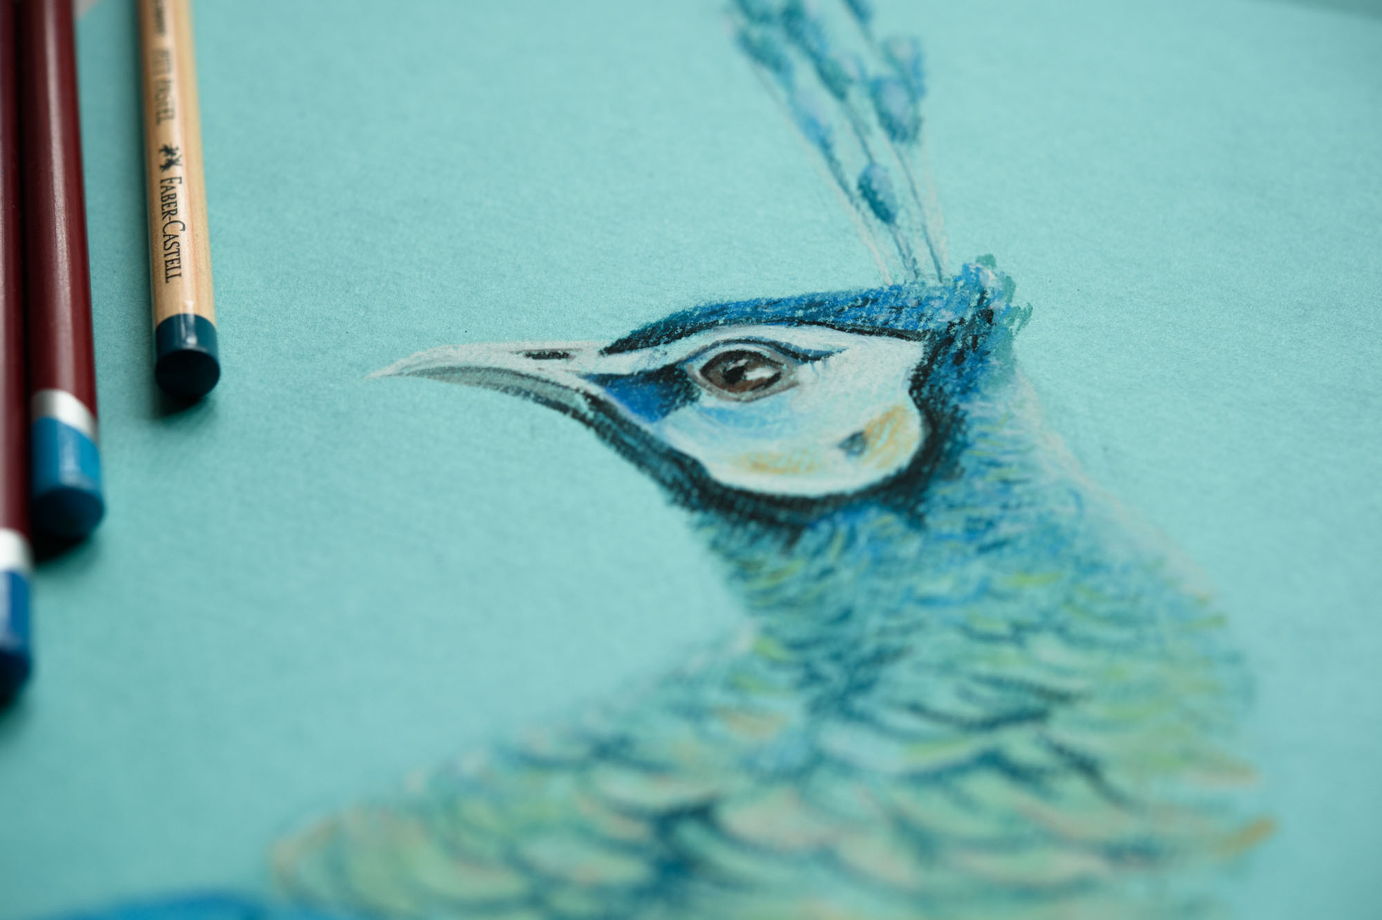 Картина птицы пастелью на бирюзовом фоне